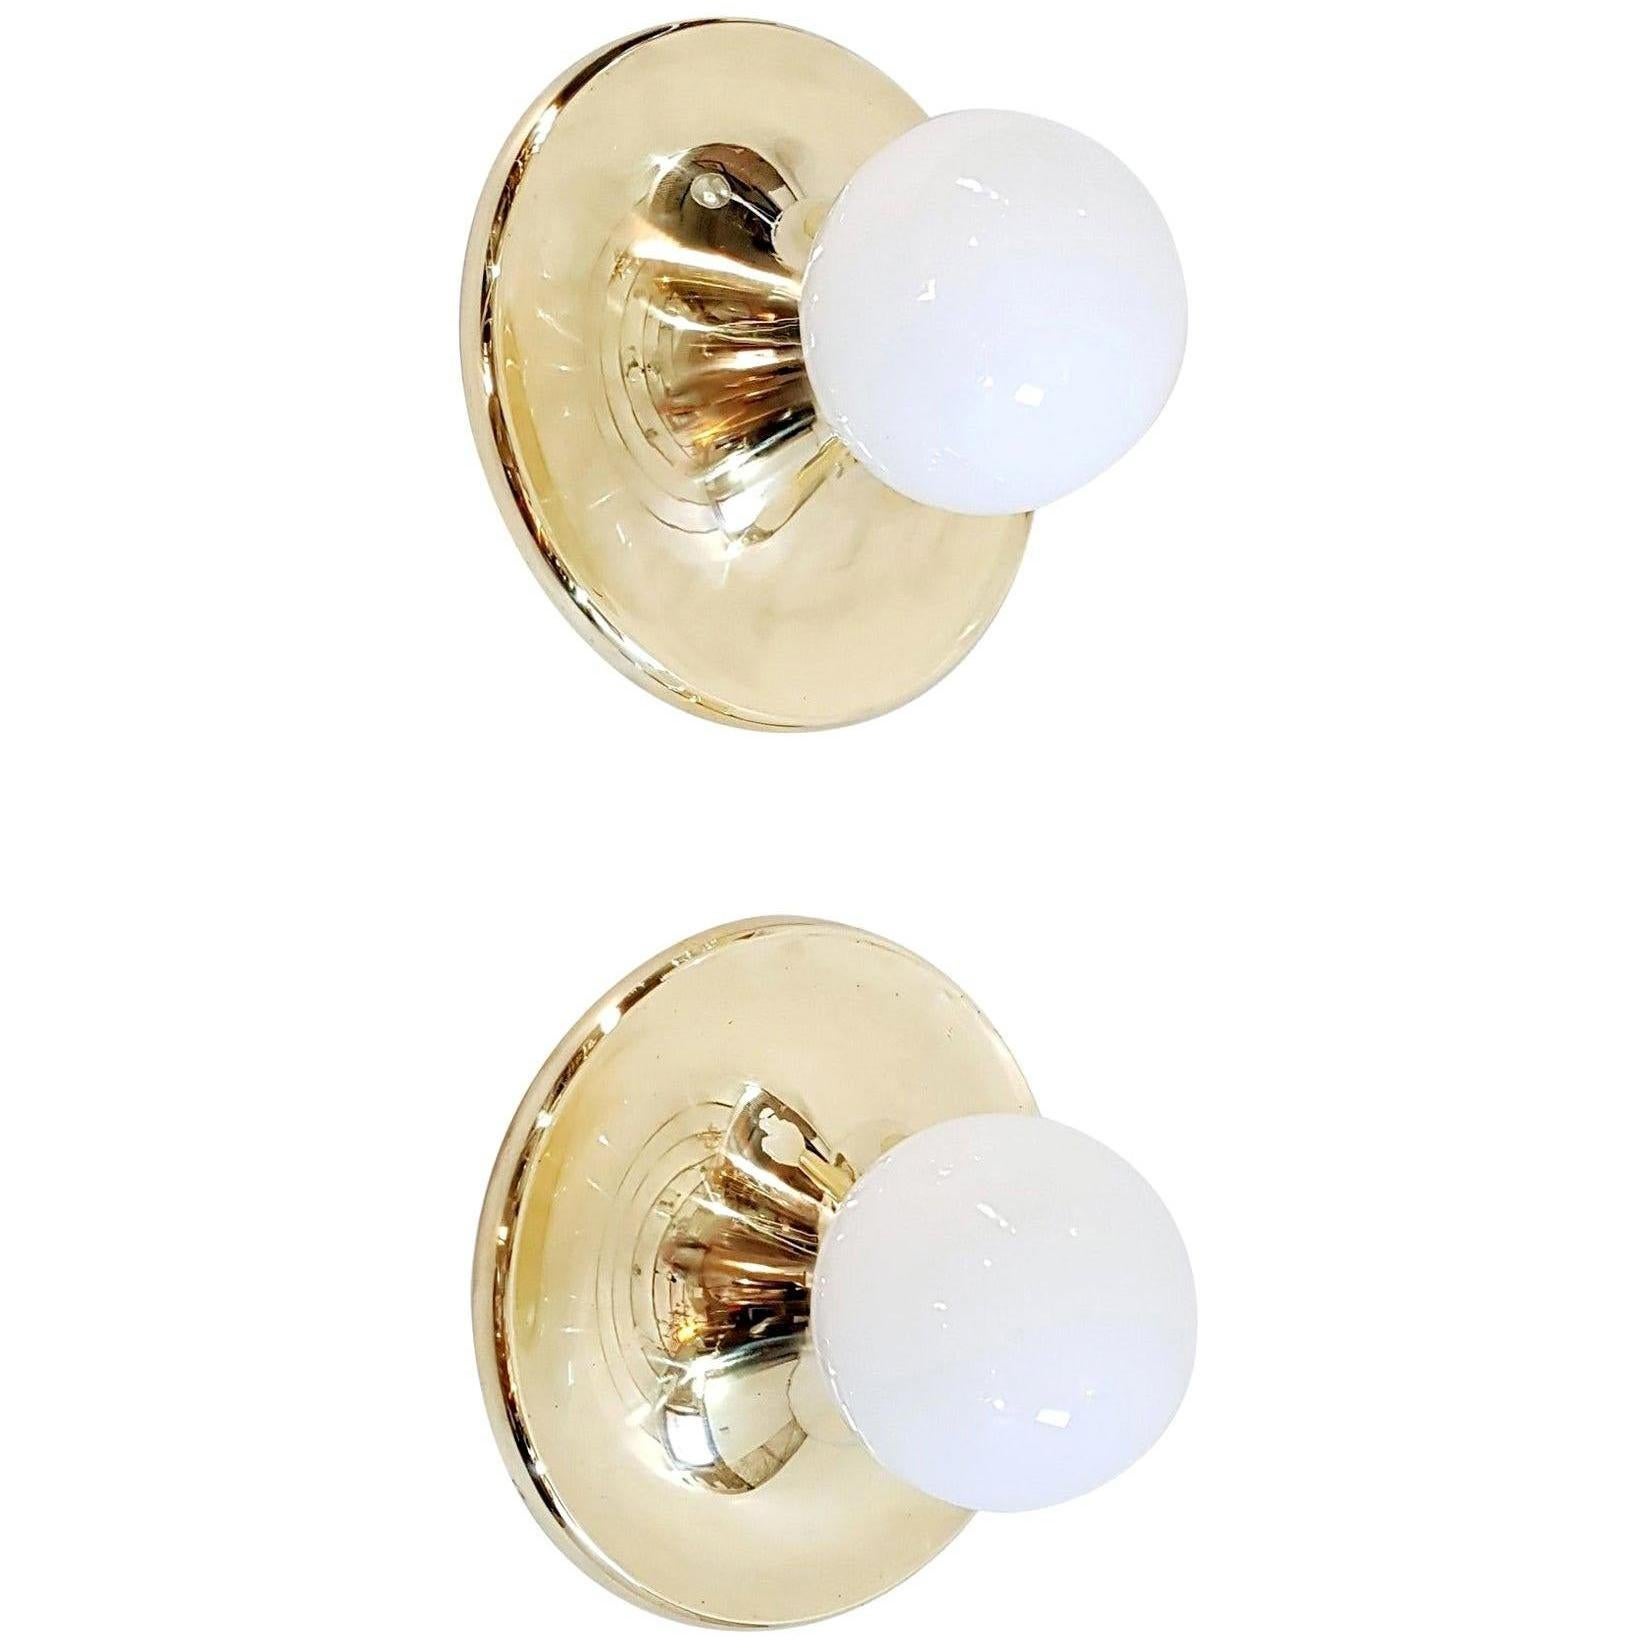 Ein großes Lampenpaar, das sowohl als Wandleuchten als auch als Wandleuchter verwendet werden kann, von Achille & Pier Giacomo Castiglioni für Flos. Entworfen und hergestellt in Italien, 1965. Messing und Opalglas. Jede Leuchte nimmt eine